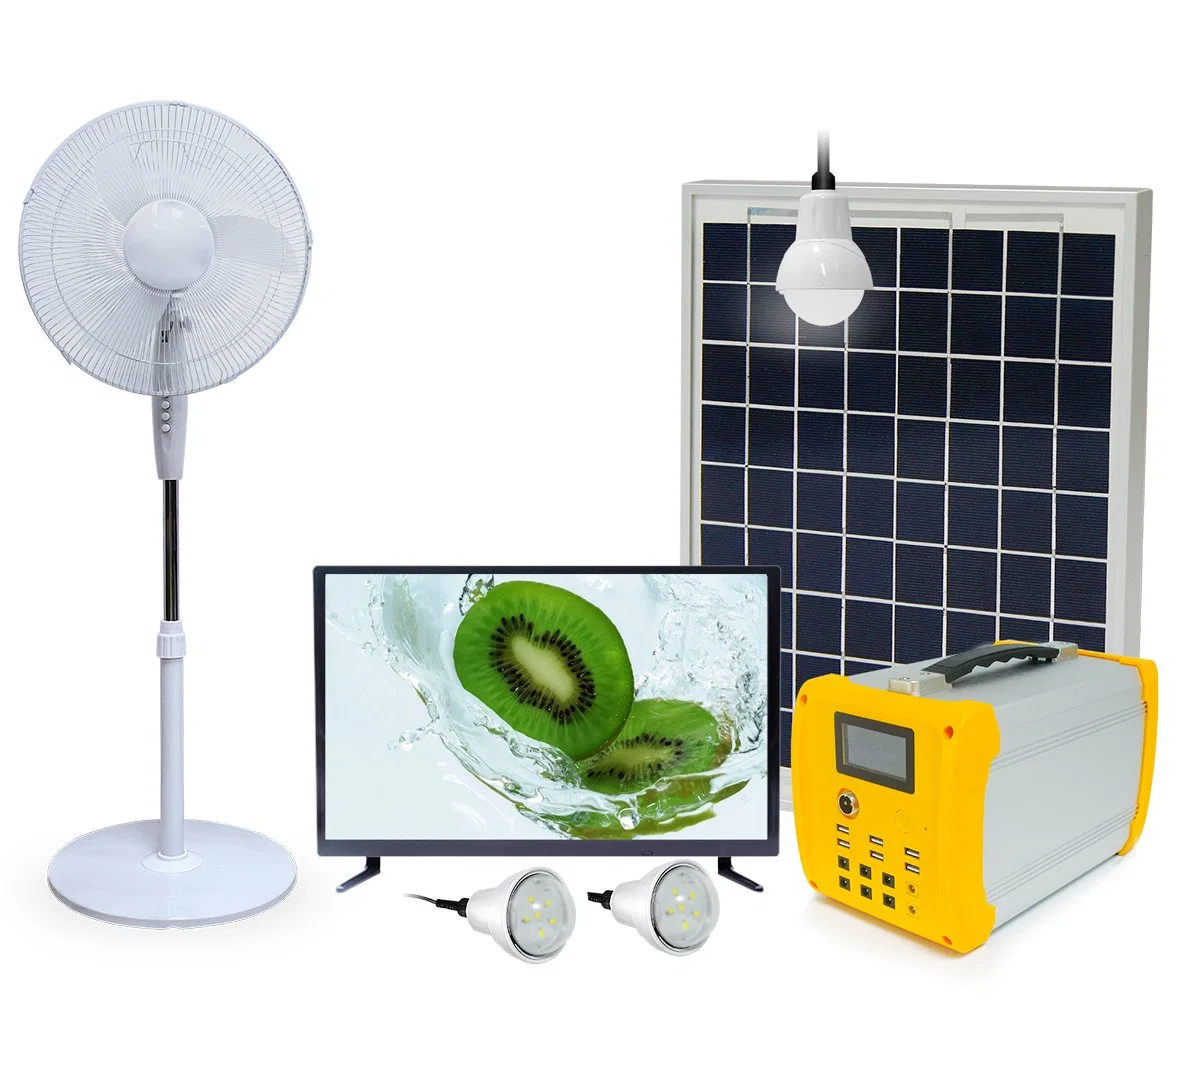 Портативные системы с помощью солнечной энергии солнечного DC телевизор вентилятор и солнечной энергии на мобильном телефоне функцию зарядного устройства